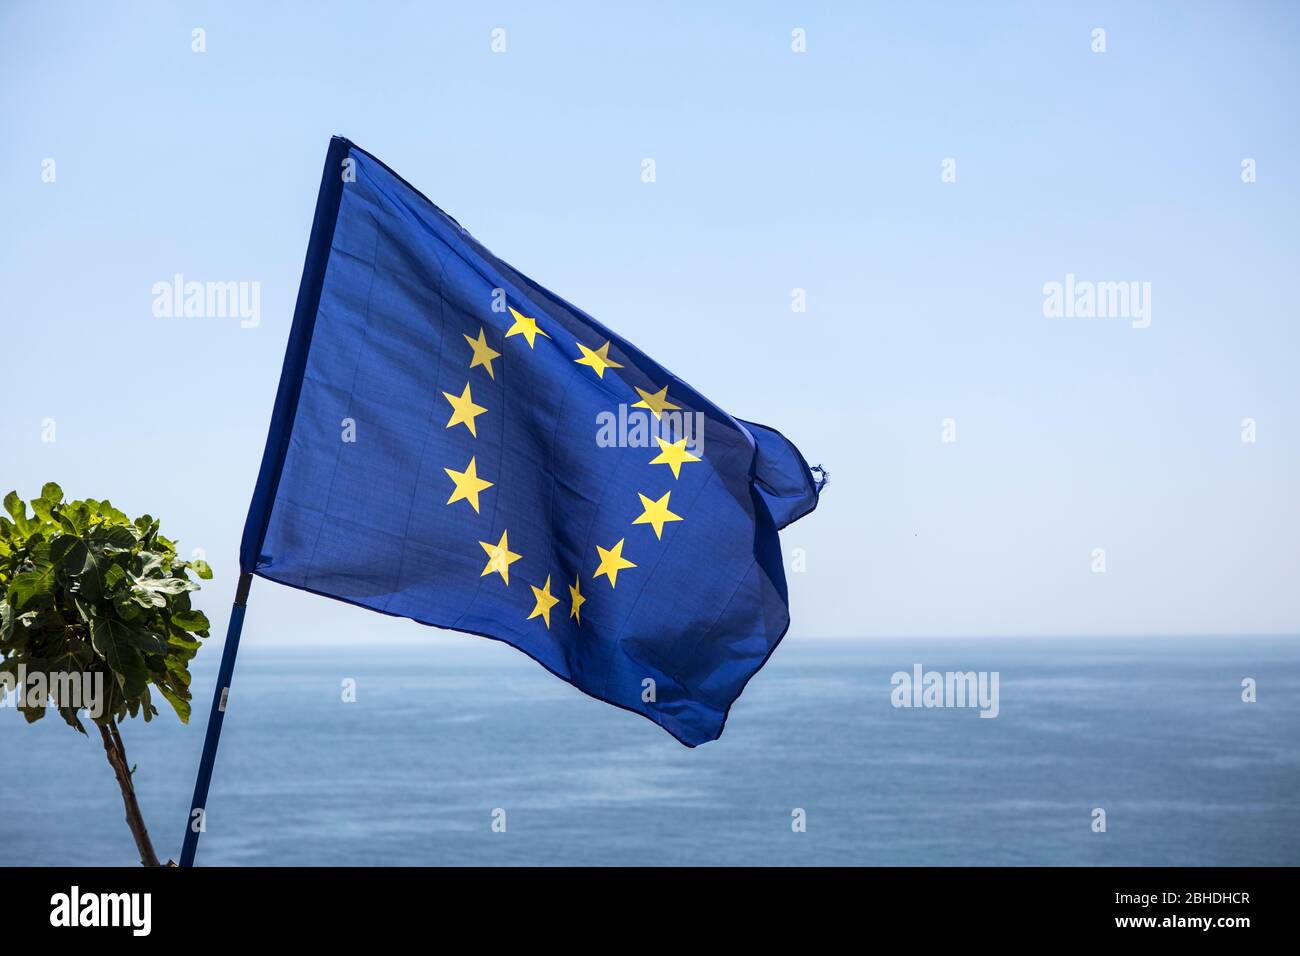 Die Flagge der europäischen Union weht am Cap bei Santa Maria di Leuca, dem Scheitelpunkt zwischen der Adria und dem ionischen Meer in Süditalien. Foto Stock